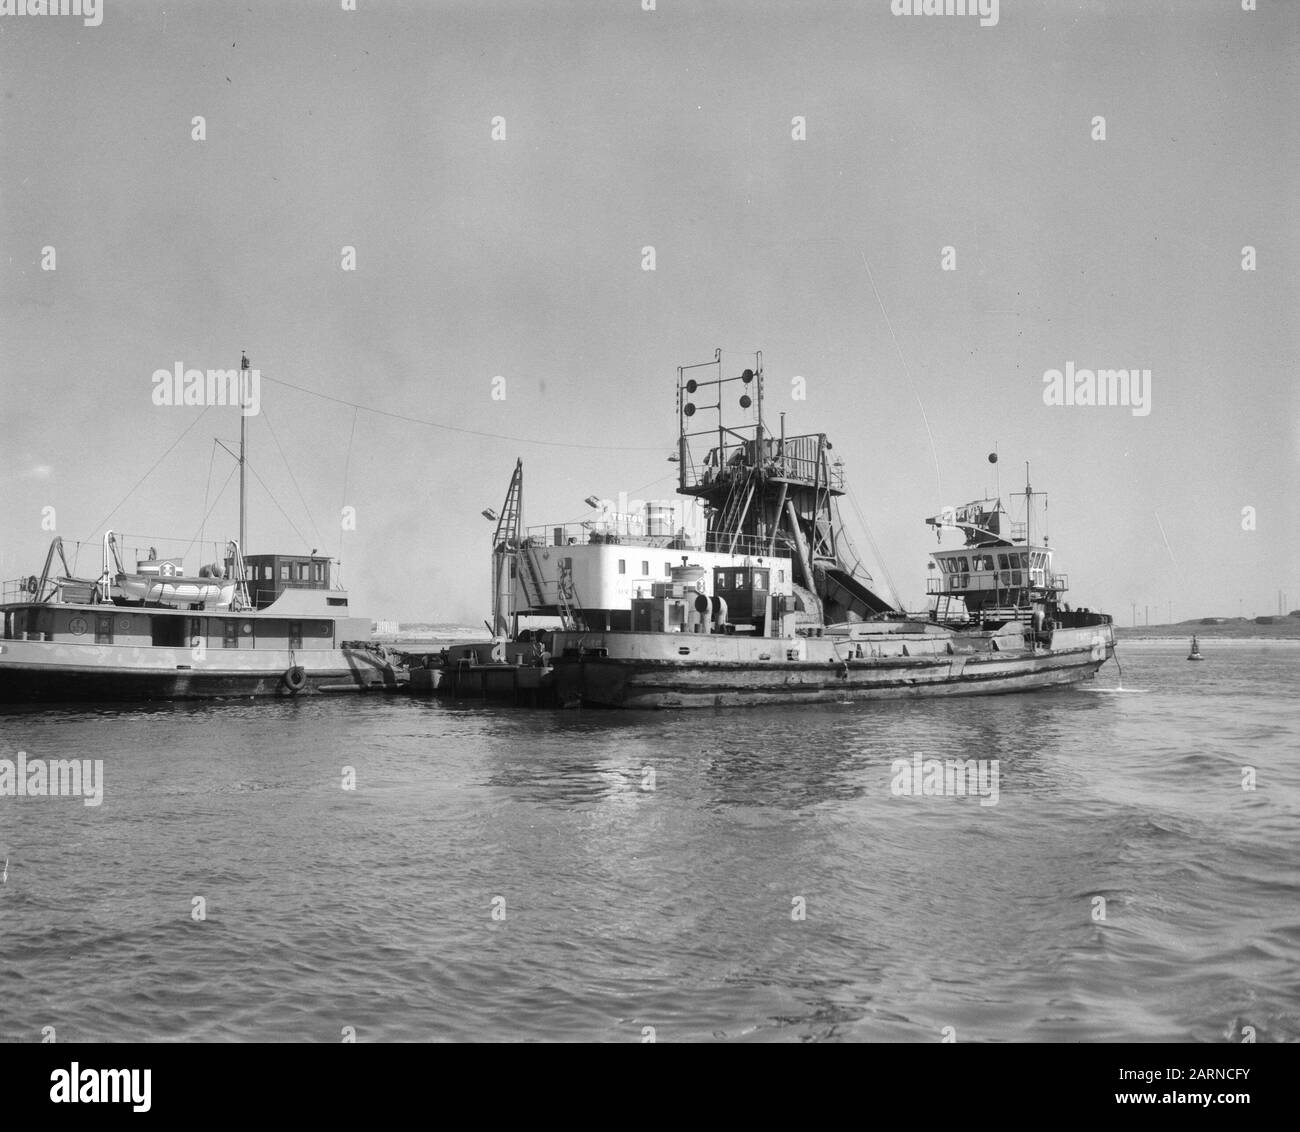 Wrackfreiheit zwischen den pieeren IJmuiden, dem englischen Kolben Sea Way Datum: 31. März 1965 Ort: IJmuiden Schlüsselwörter: Pistons Stockfoto